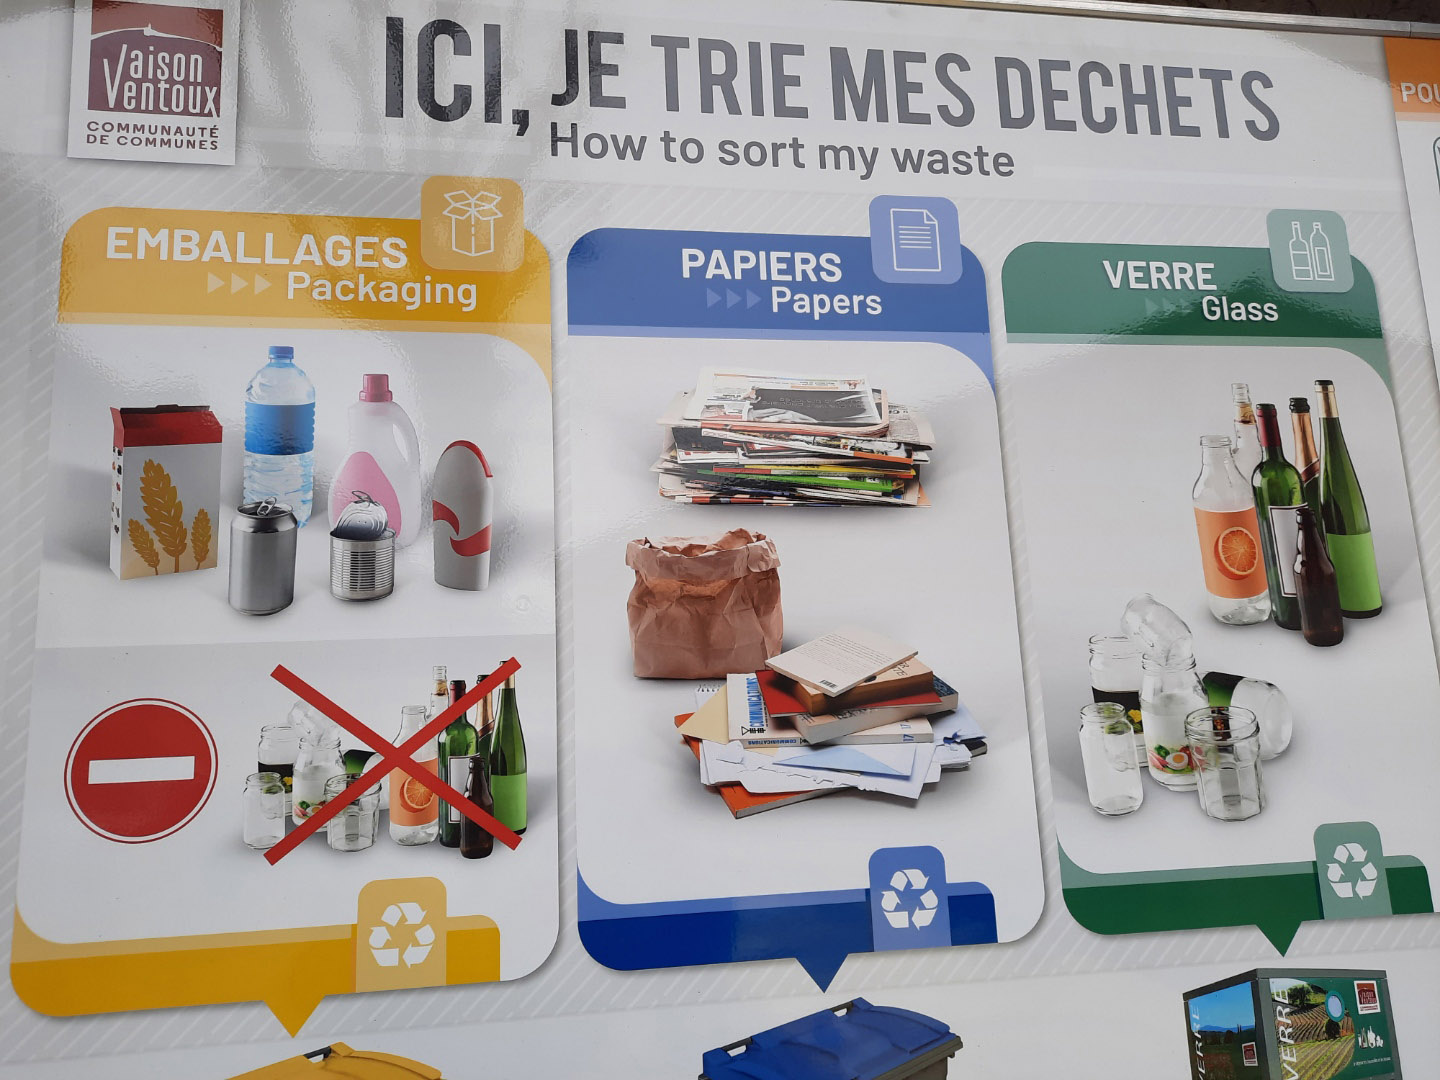 Affichage du tri sélectif illégal à la Communauté de communes de Vaison-Ventoux